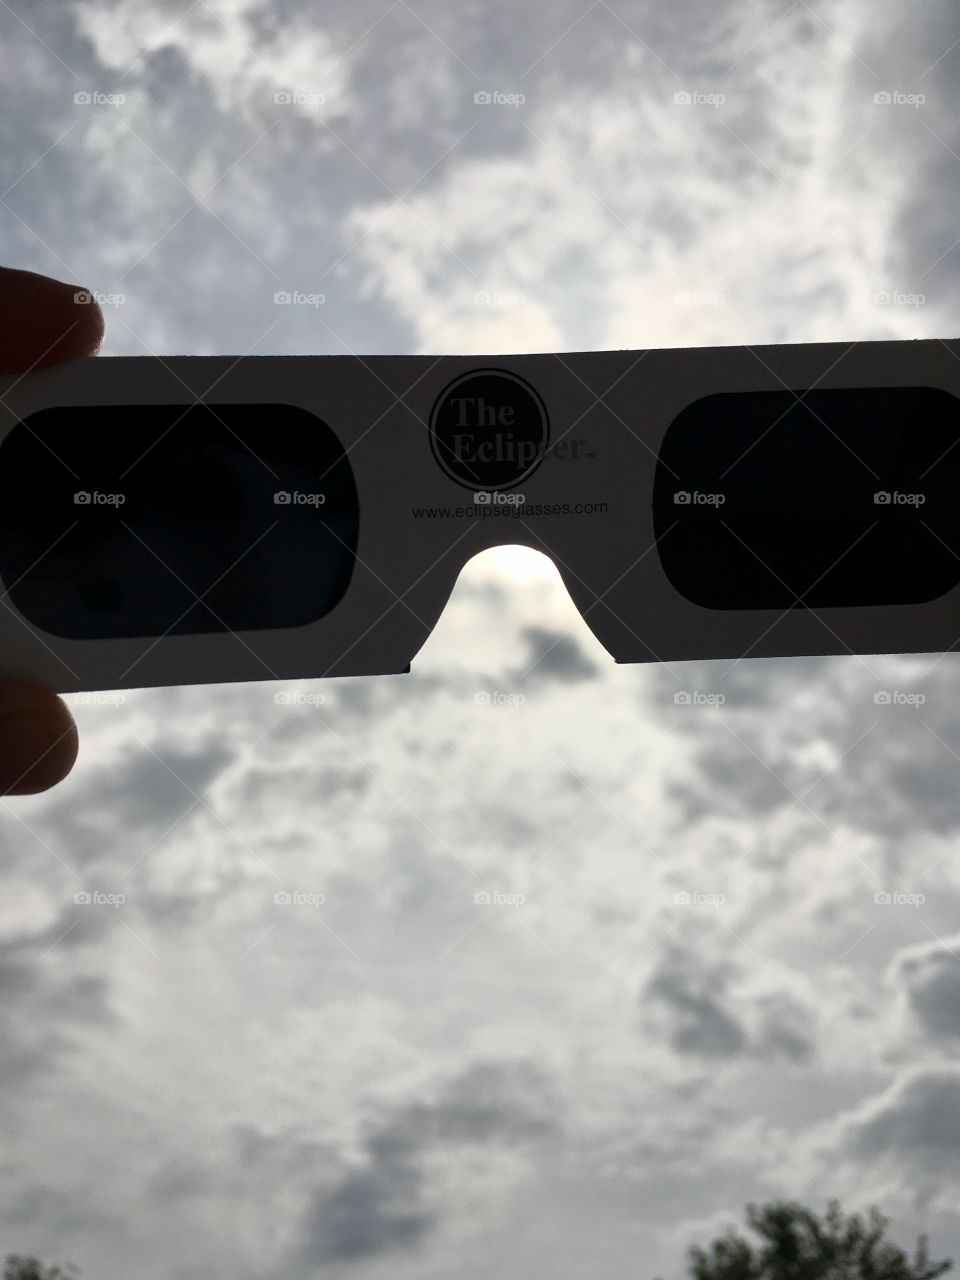 Eclipse sun glasses 2017 Illinois 